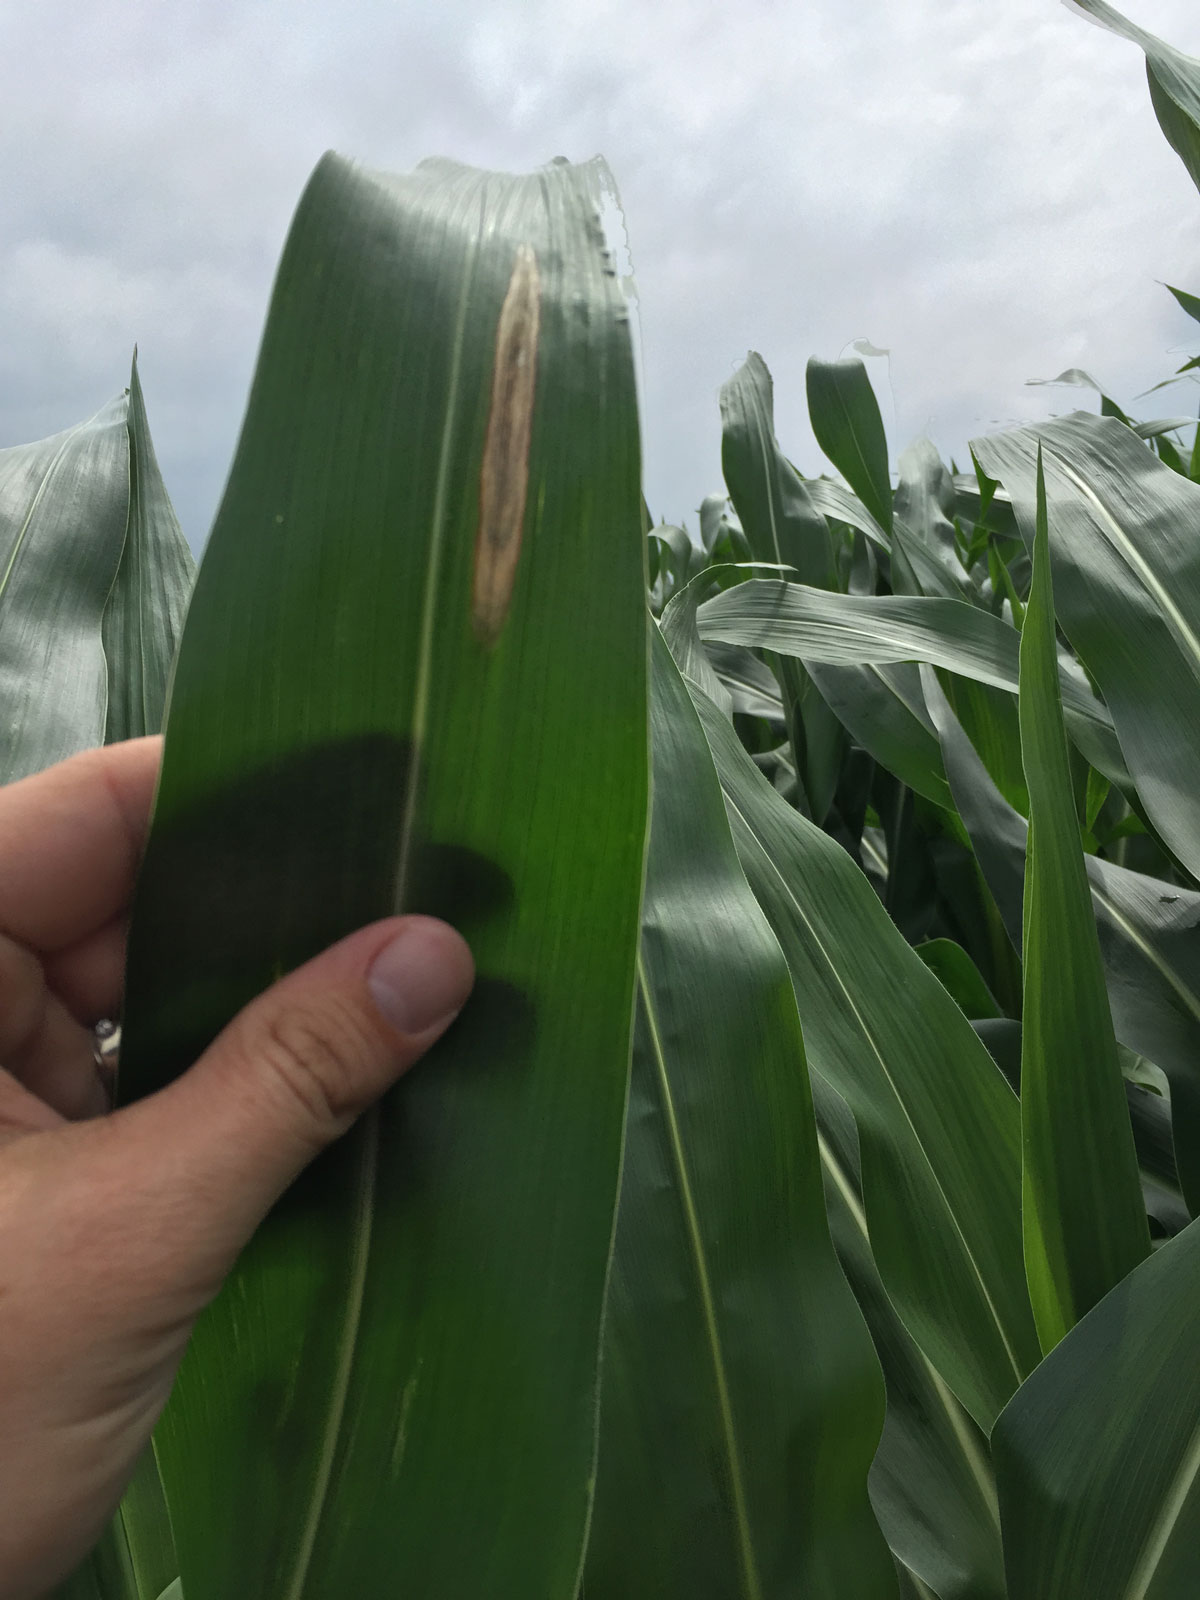 Northern corn blight lesion on V12 corn leaf